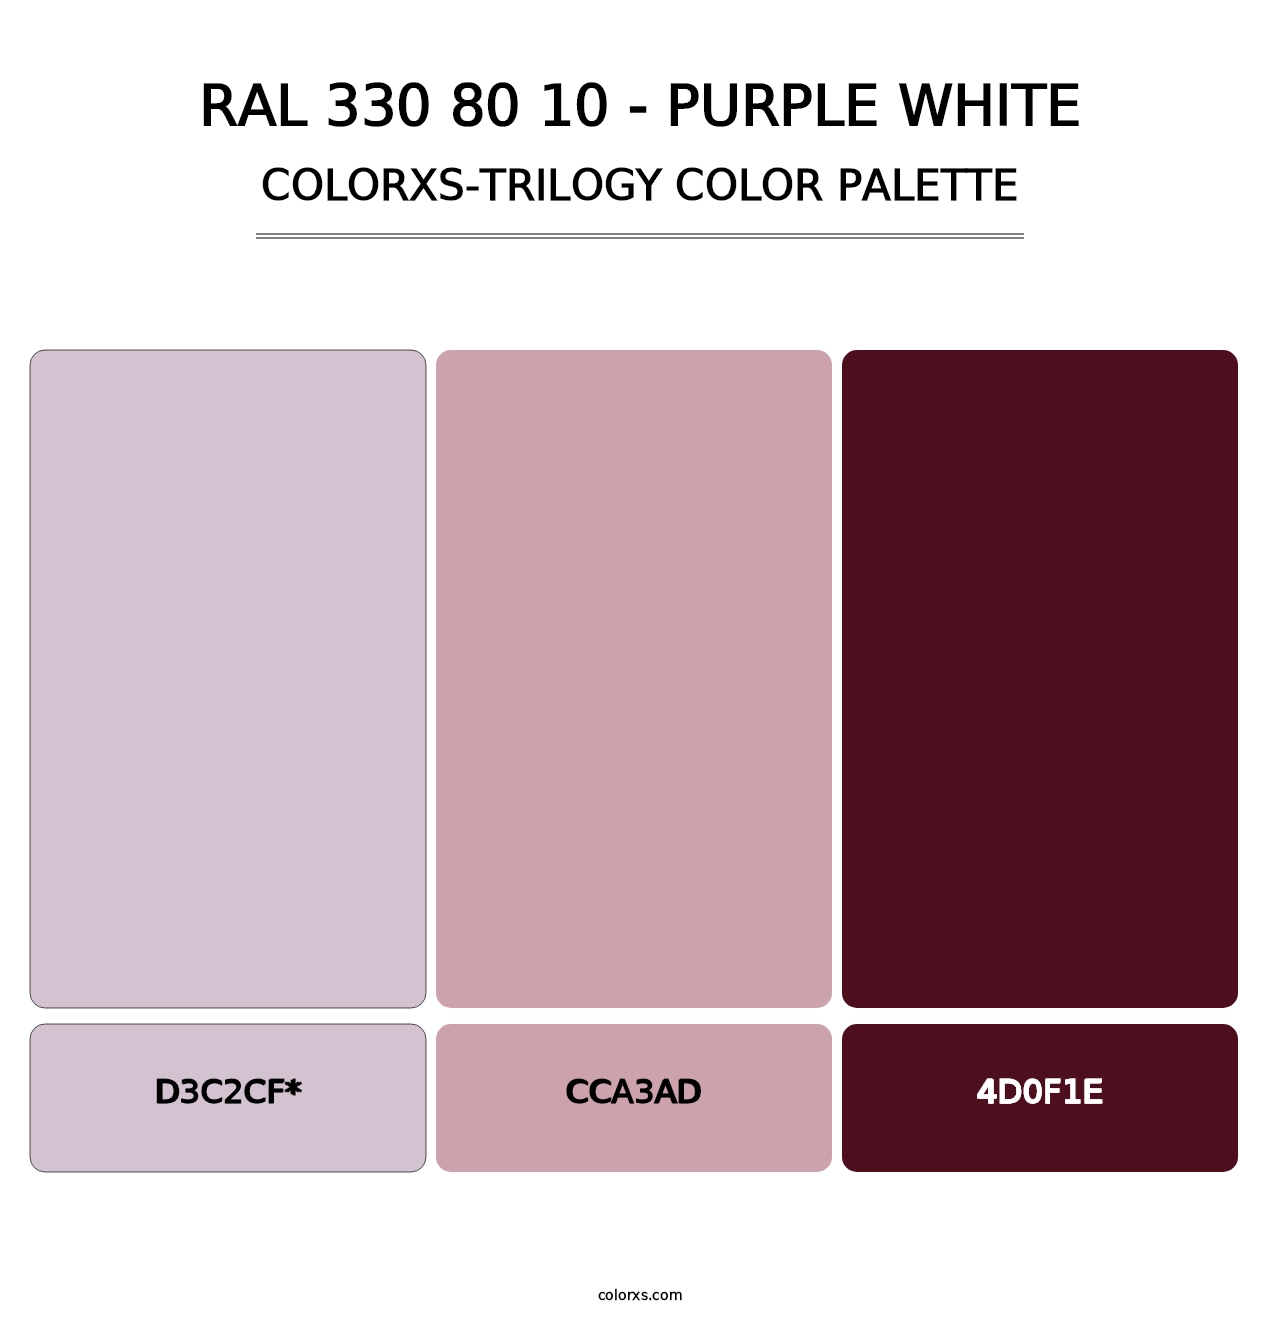 RAL 330 80 10 - Purple White - Colorxs Trilogy Palette